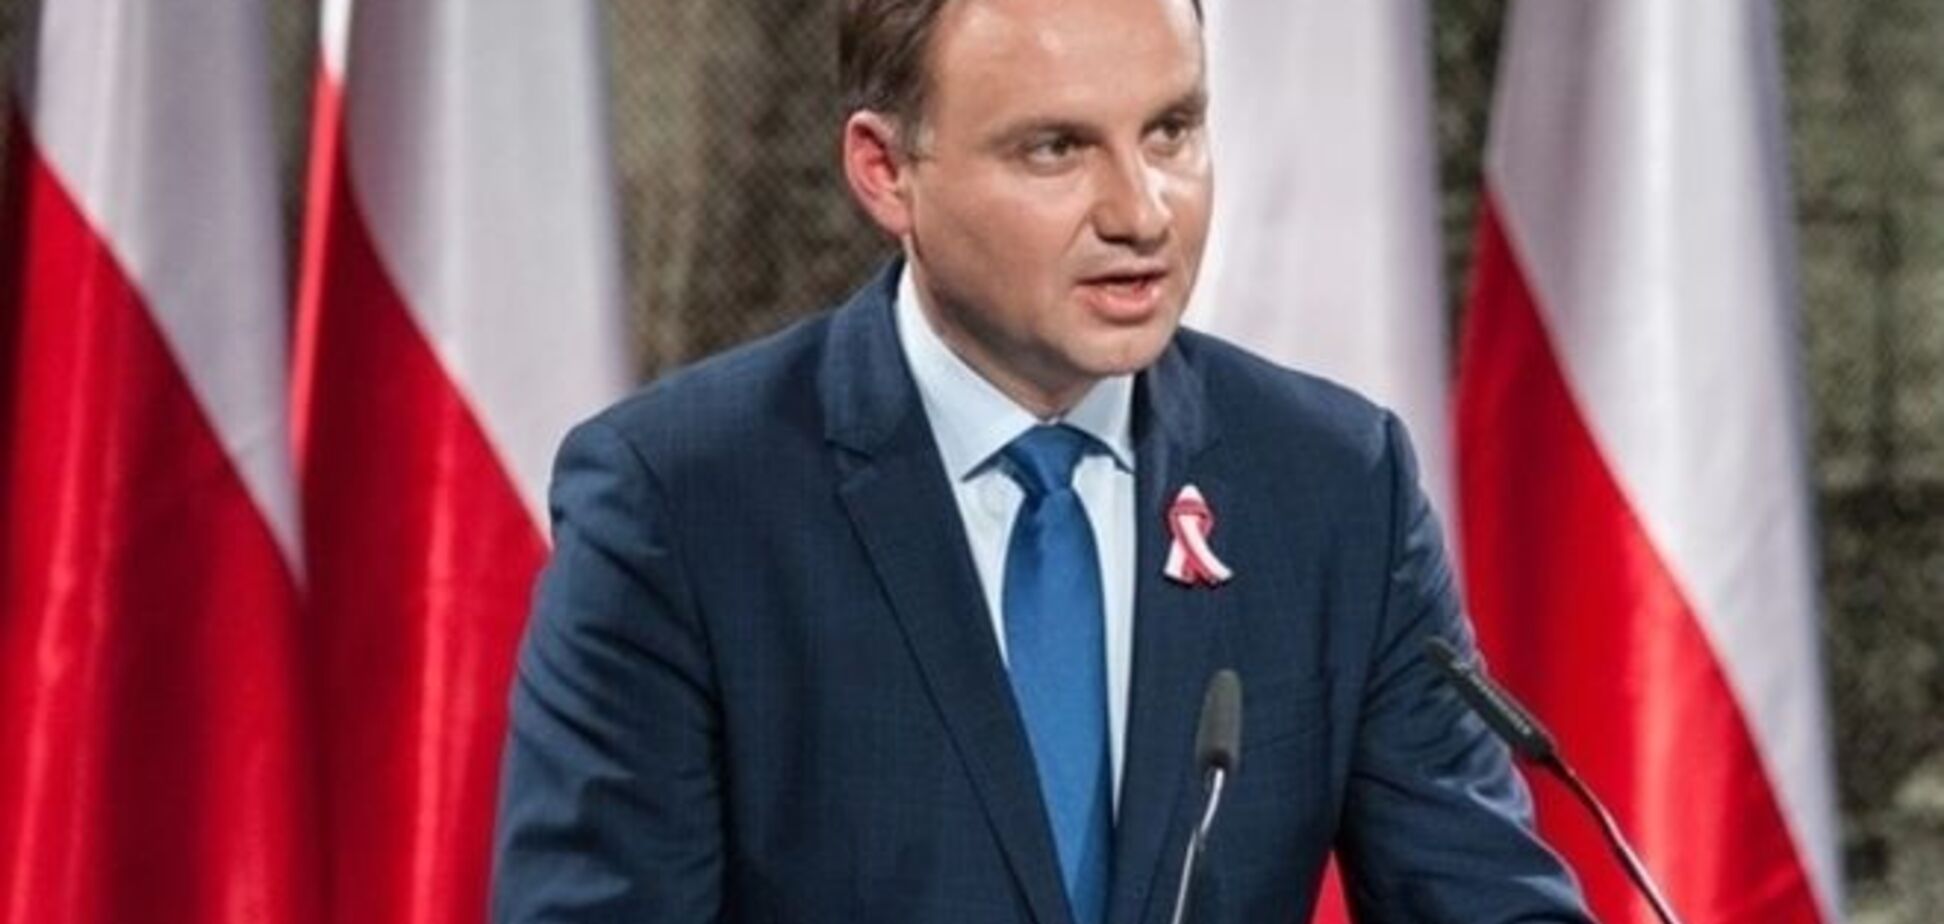 Президент Польщі запропонував новий формат переговорів по Донбасу